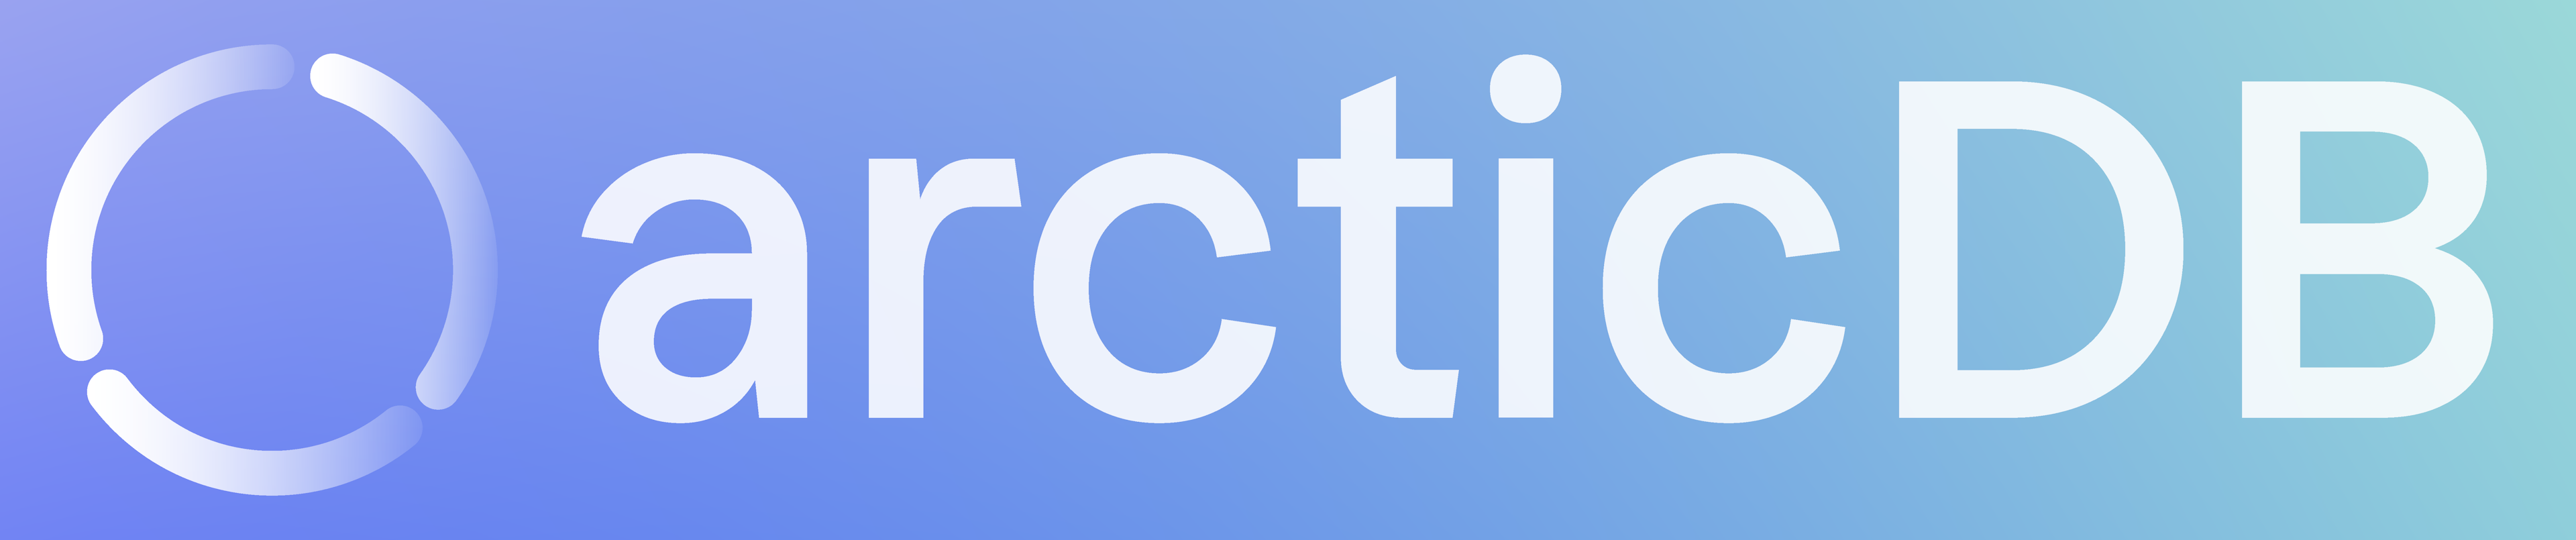 arcticDB logo